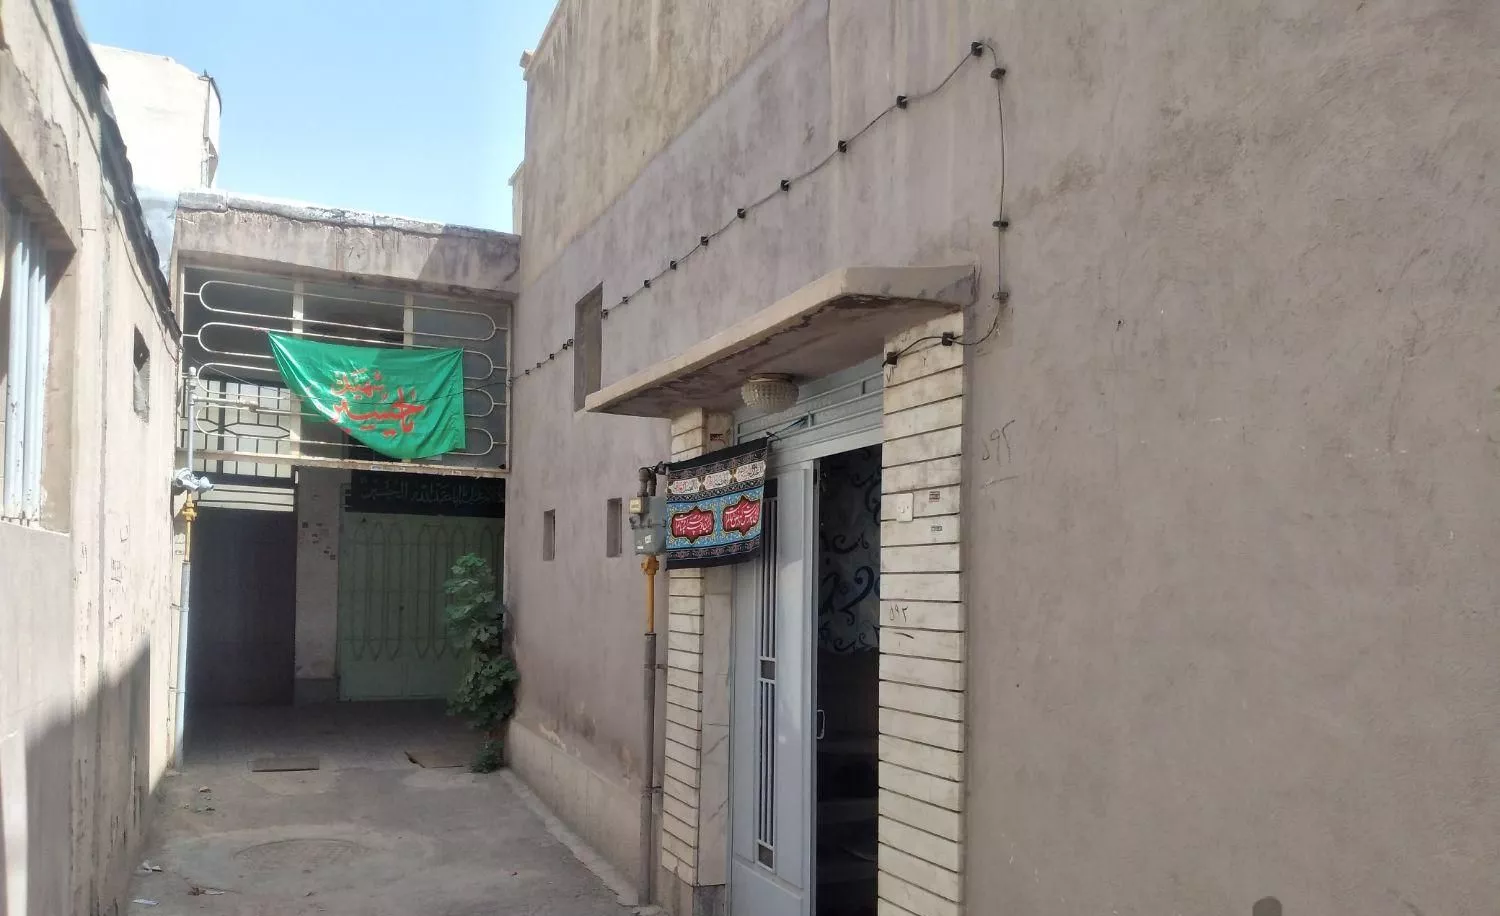 منزل ویلایی پلاک سوم خیابان فروغی به دروازه تهران